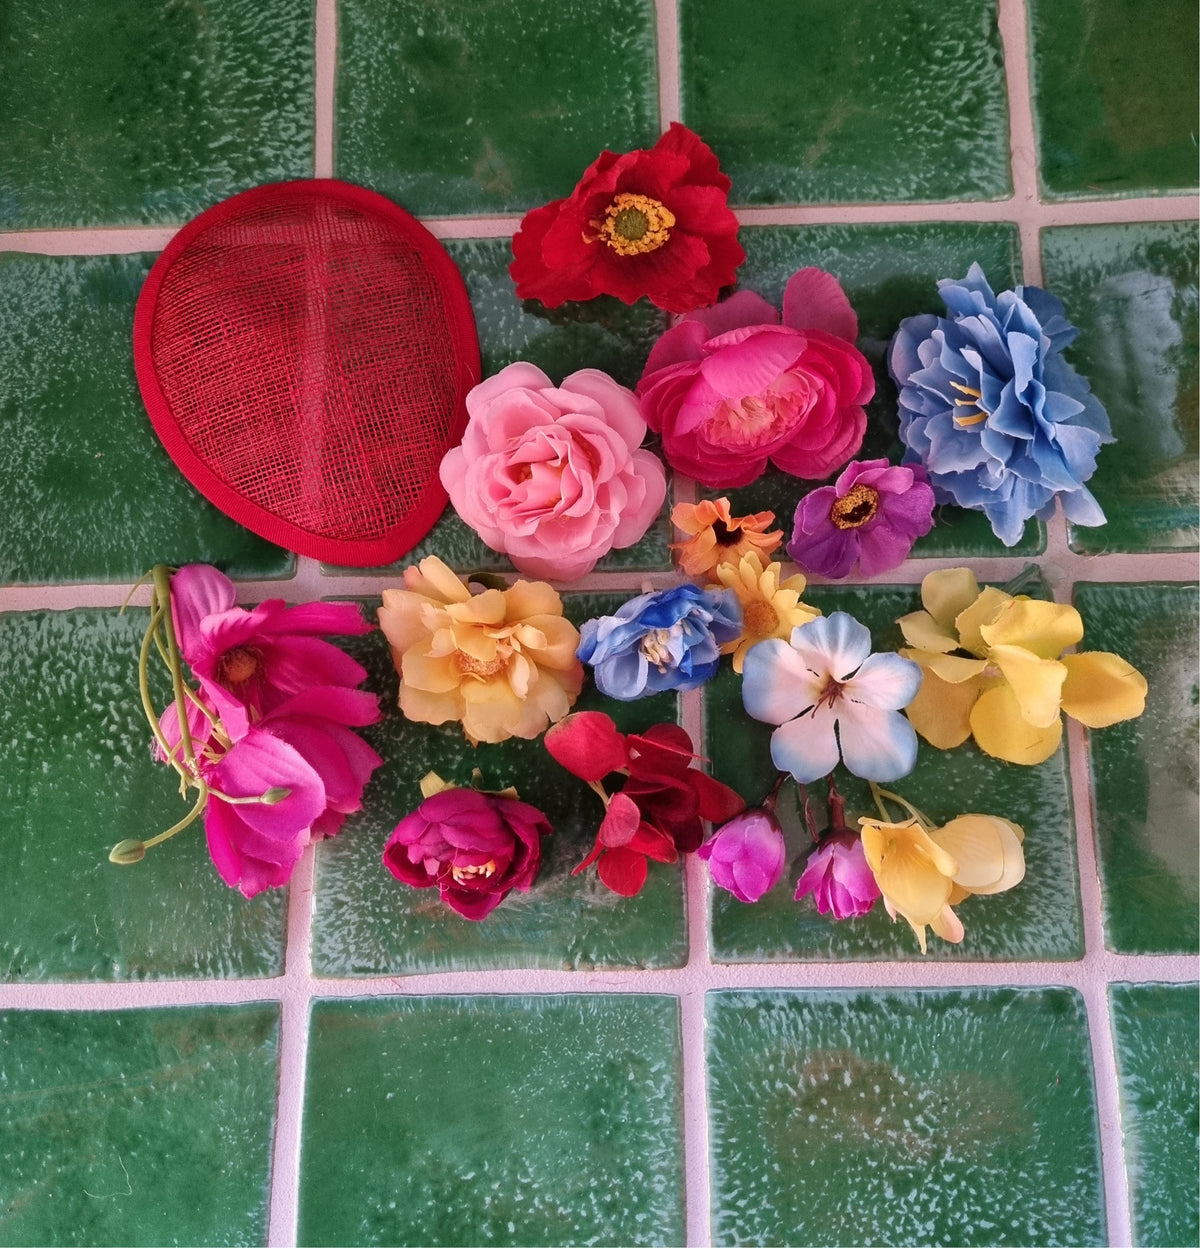 Lav din egen farvestrålende fascinator - Hårpynt med blomster og perler til bryllup, konfirmation og fest